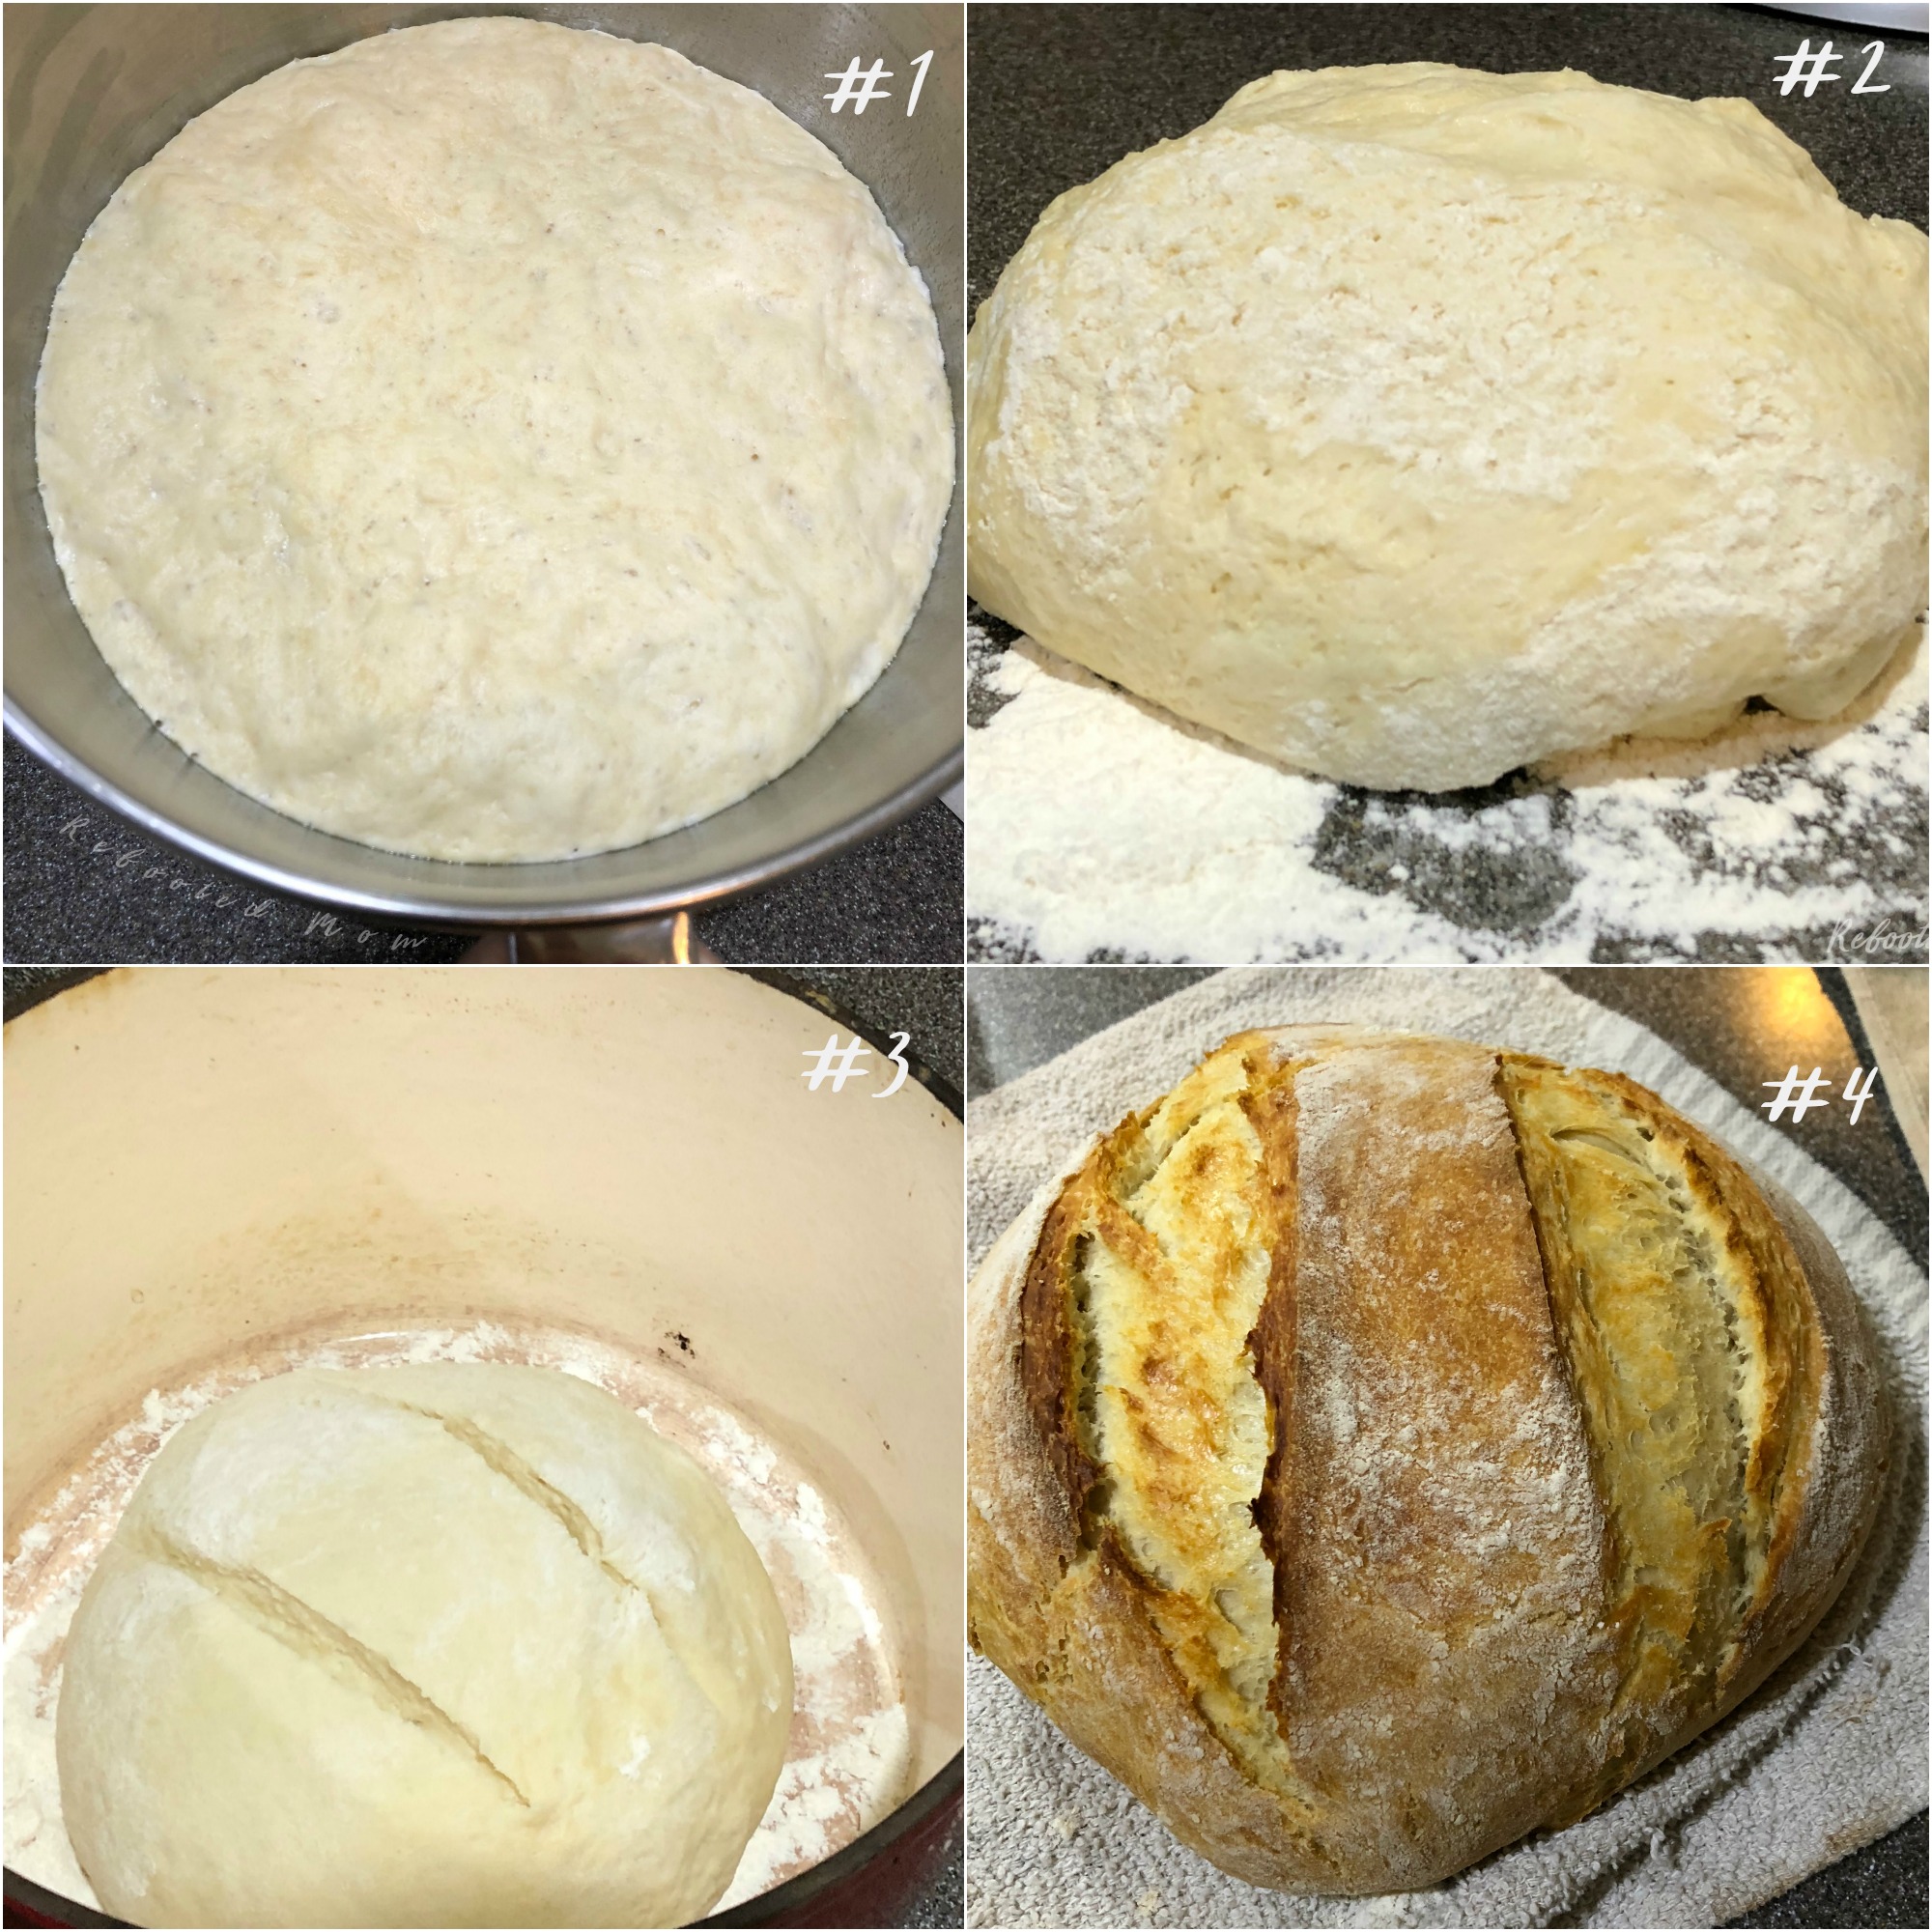 Make a successful quick kefir sourdough bread using kefir fermented milk in lieu of a sourdough starter. It bakes up beautifully!